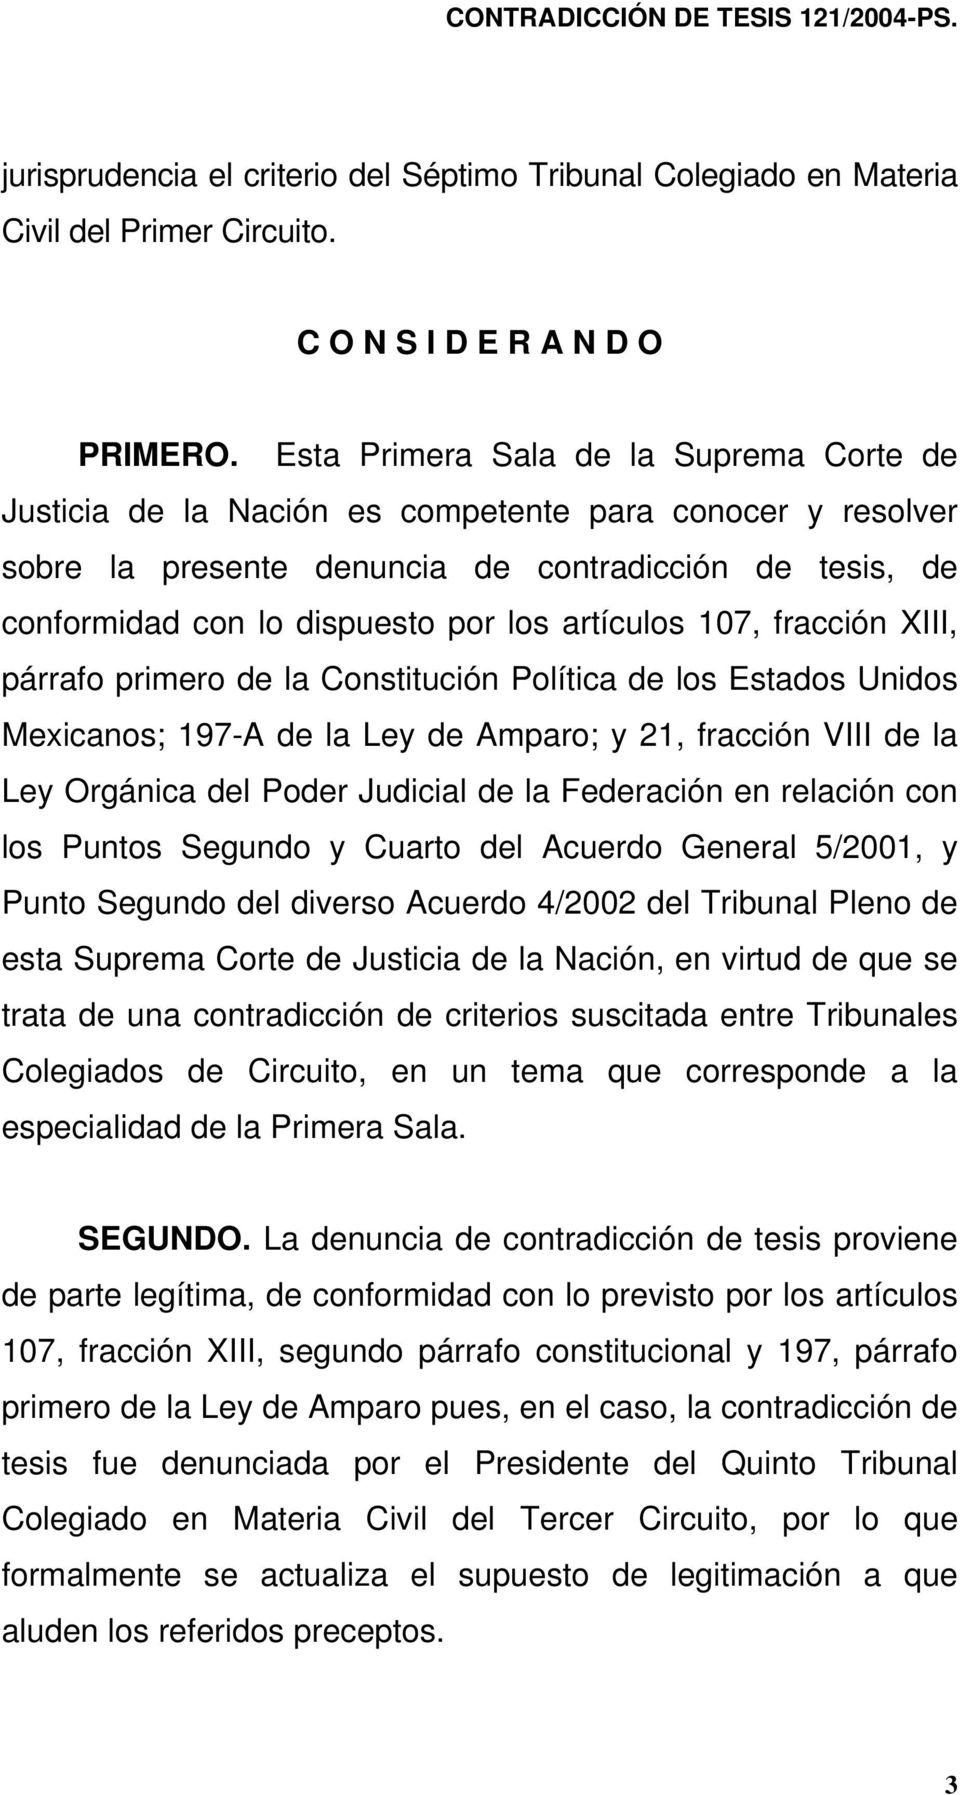 artículos 107, fracción XIII, párrafo primero de la Constitución Política de los Estados Unidos Mexicanos; 197-A de la Ley de Amparo; y 21, fracción VIII de la Ley Orgánica del Poder Judicial de la